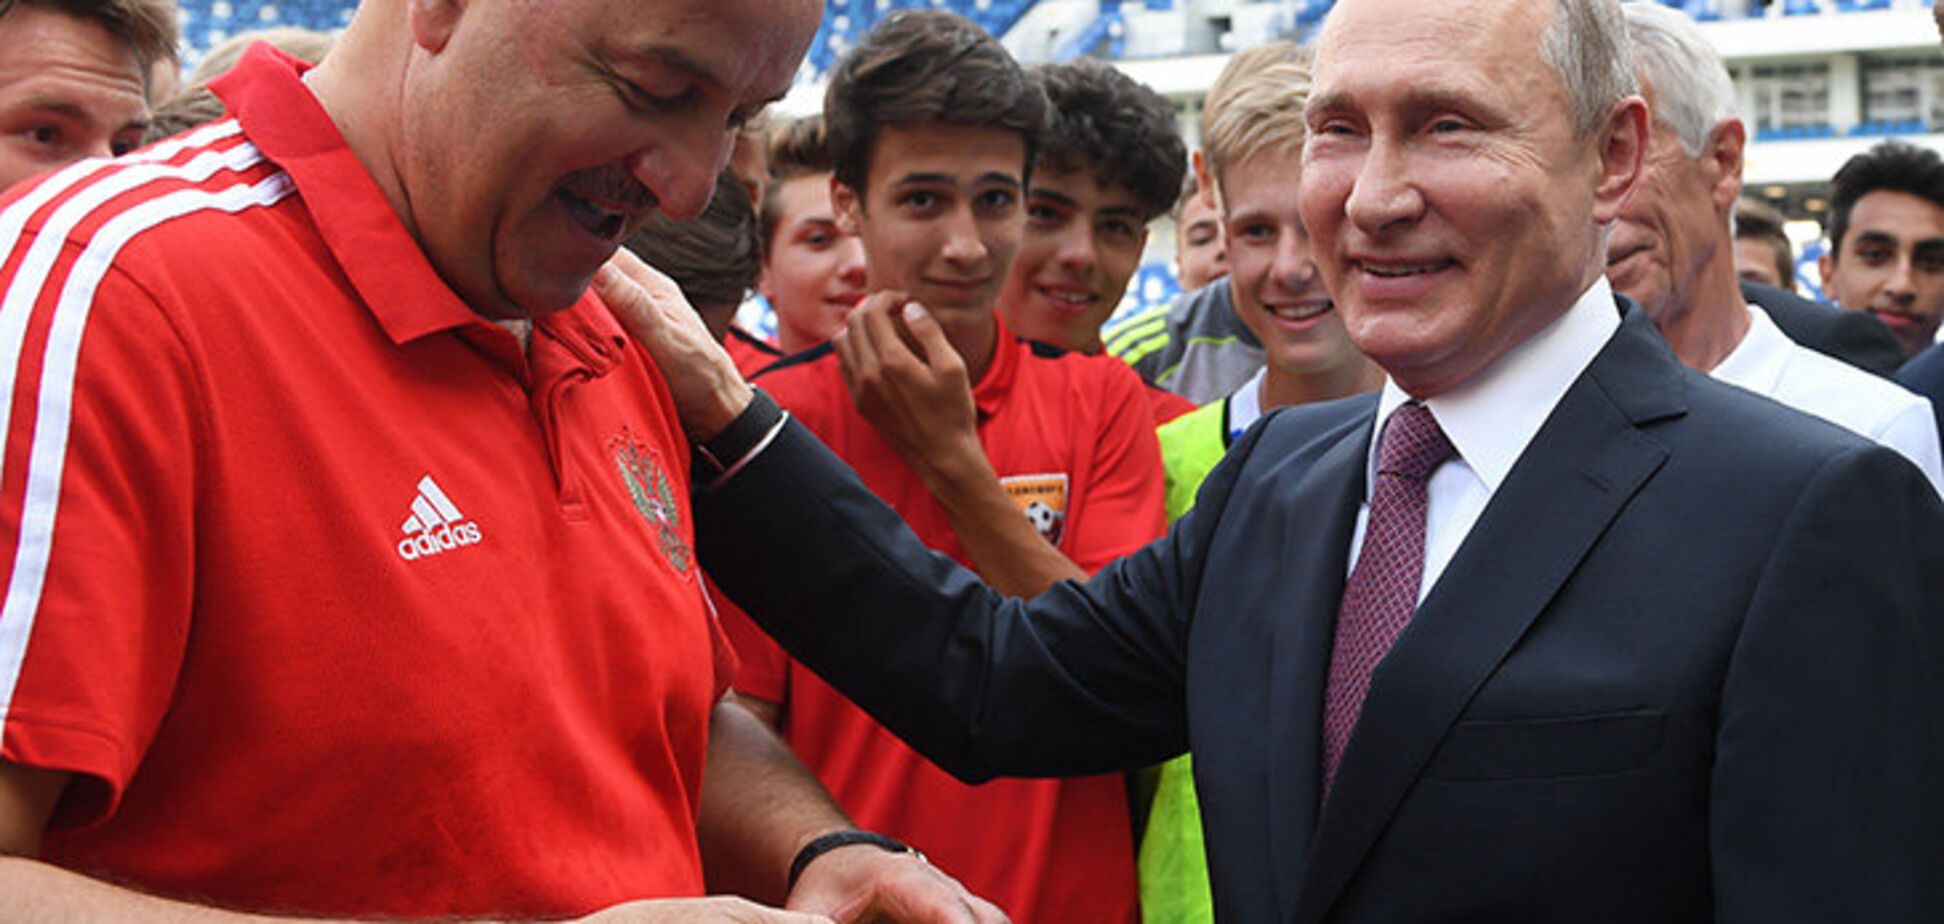 Черчесова высмеяли в сети за 'рабский' поступок на встрече с Путиным